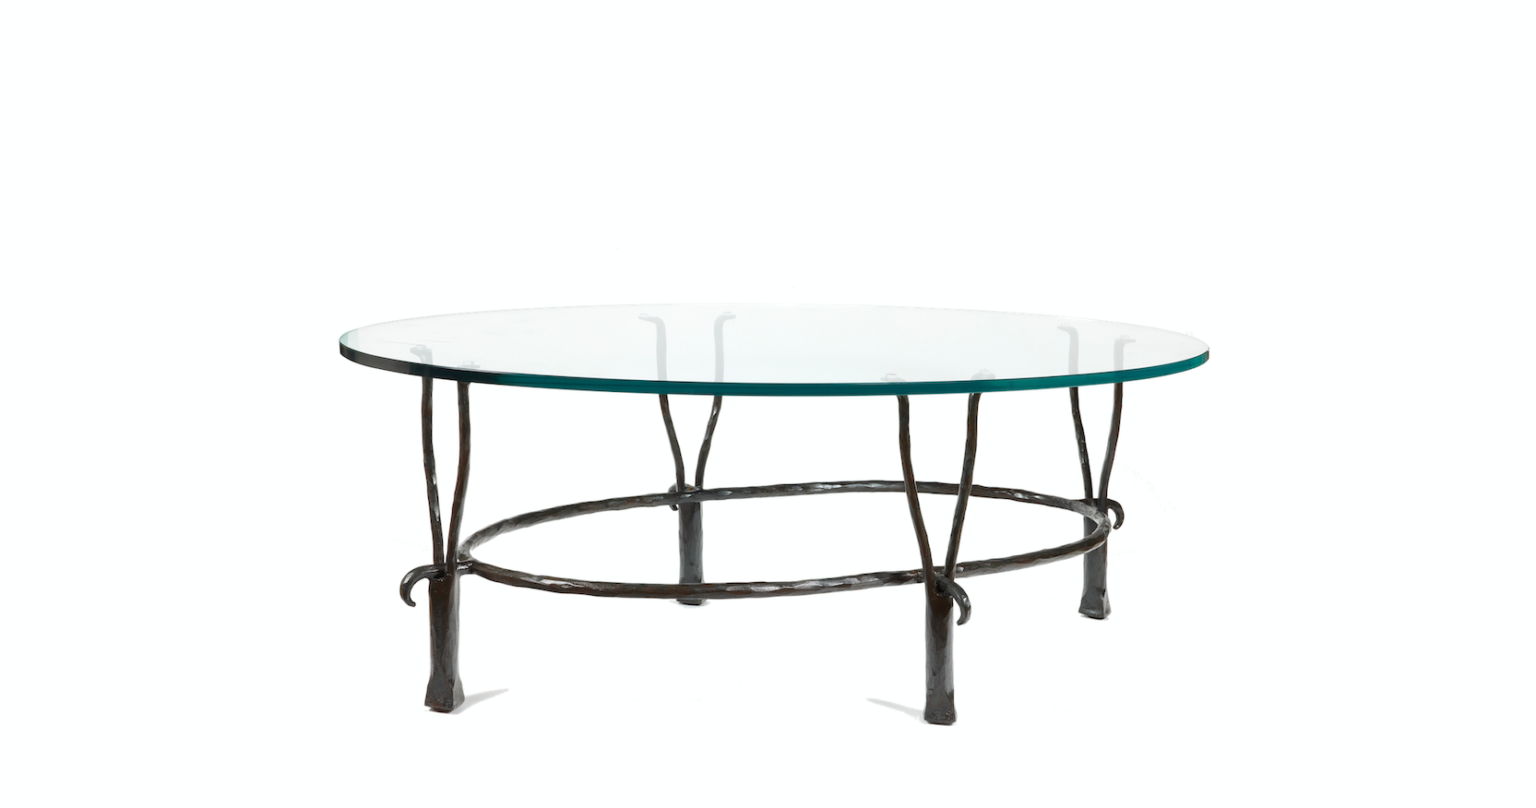 Garouste Bonetti, table basse minimaliste ovale pieds en fer forgé noir qui se séparent en haut en deux petites fourches, situées sous le plateau de verre